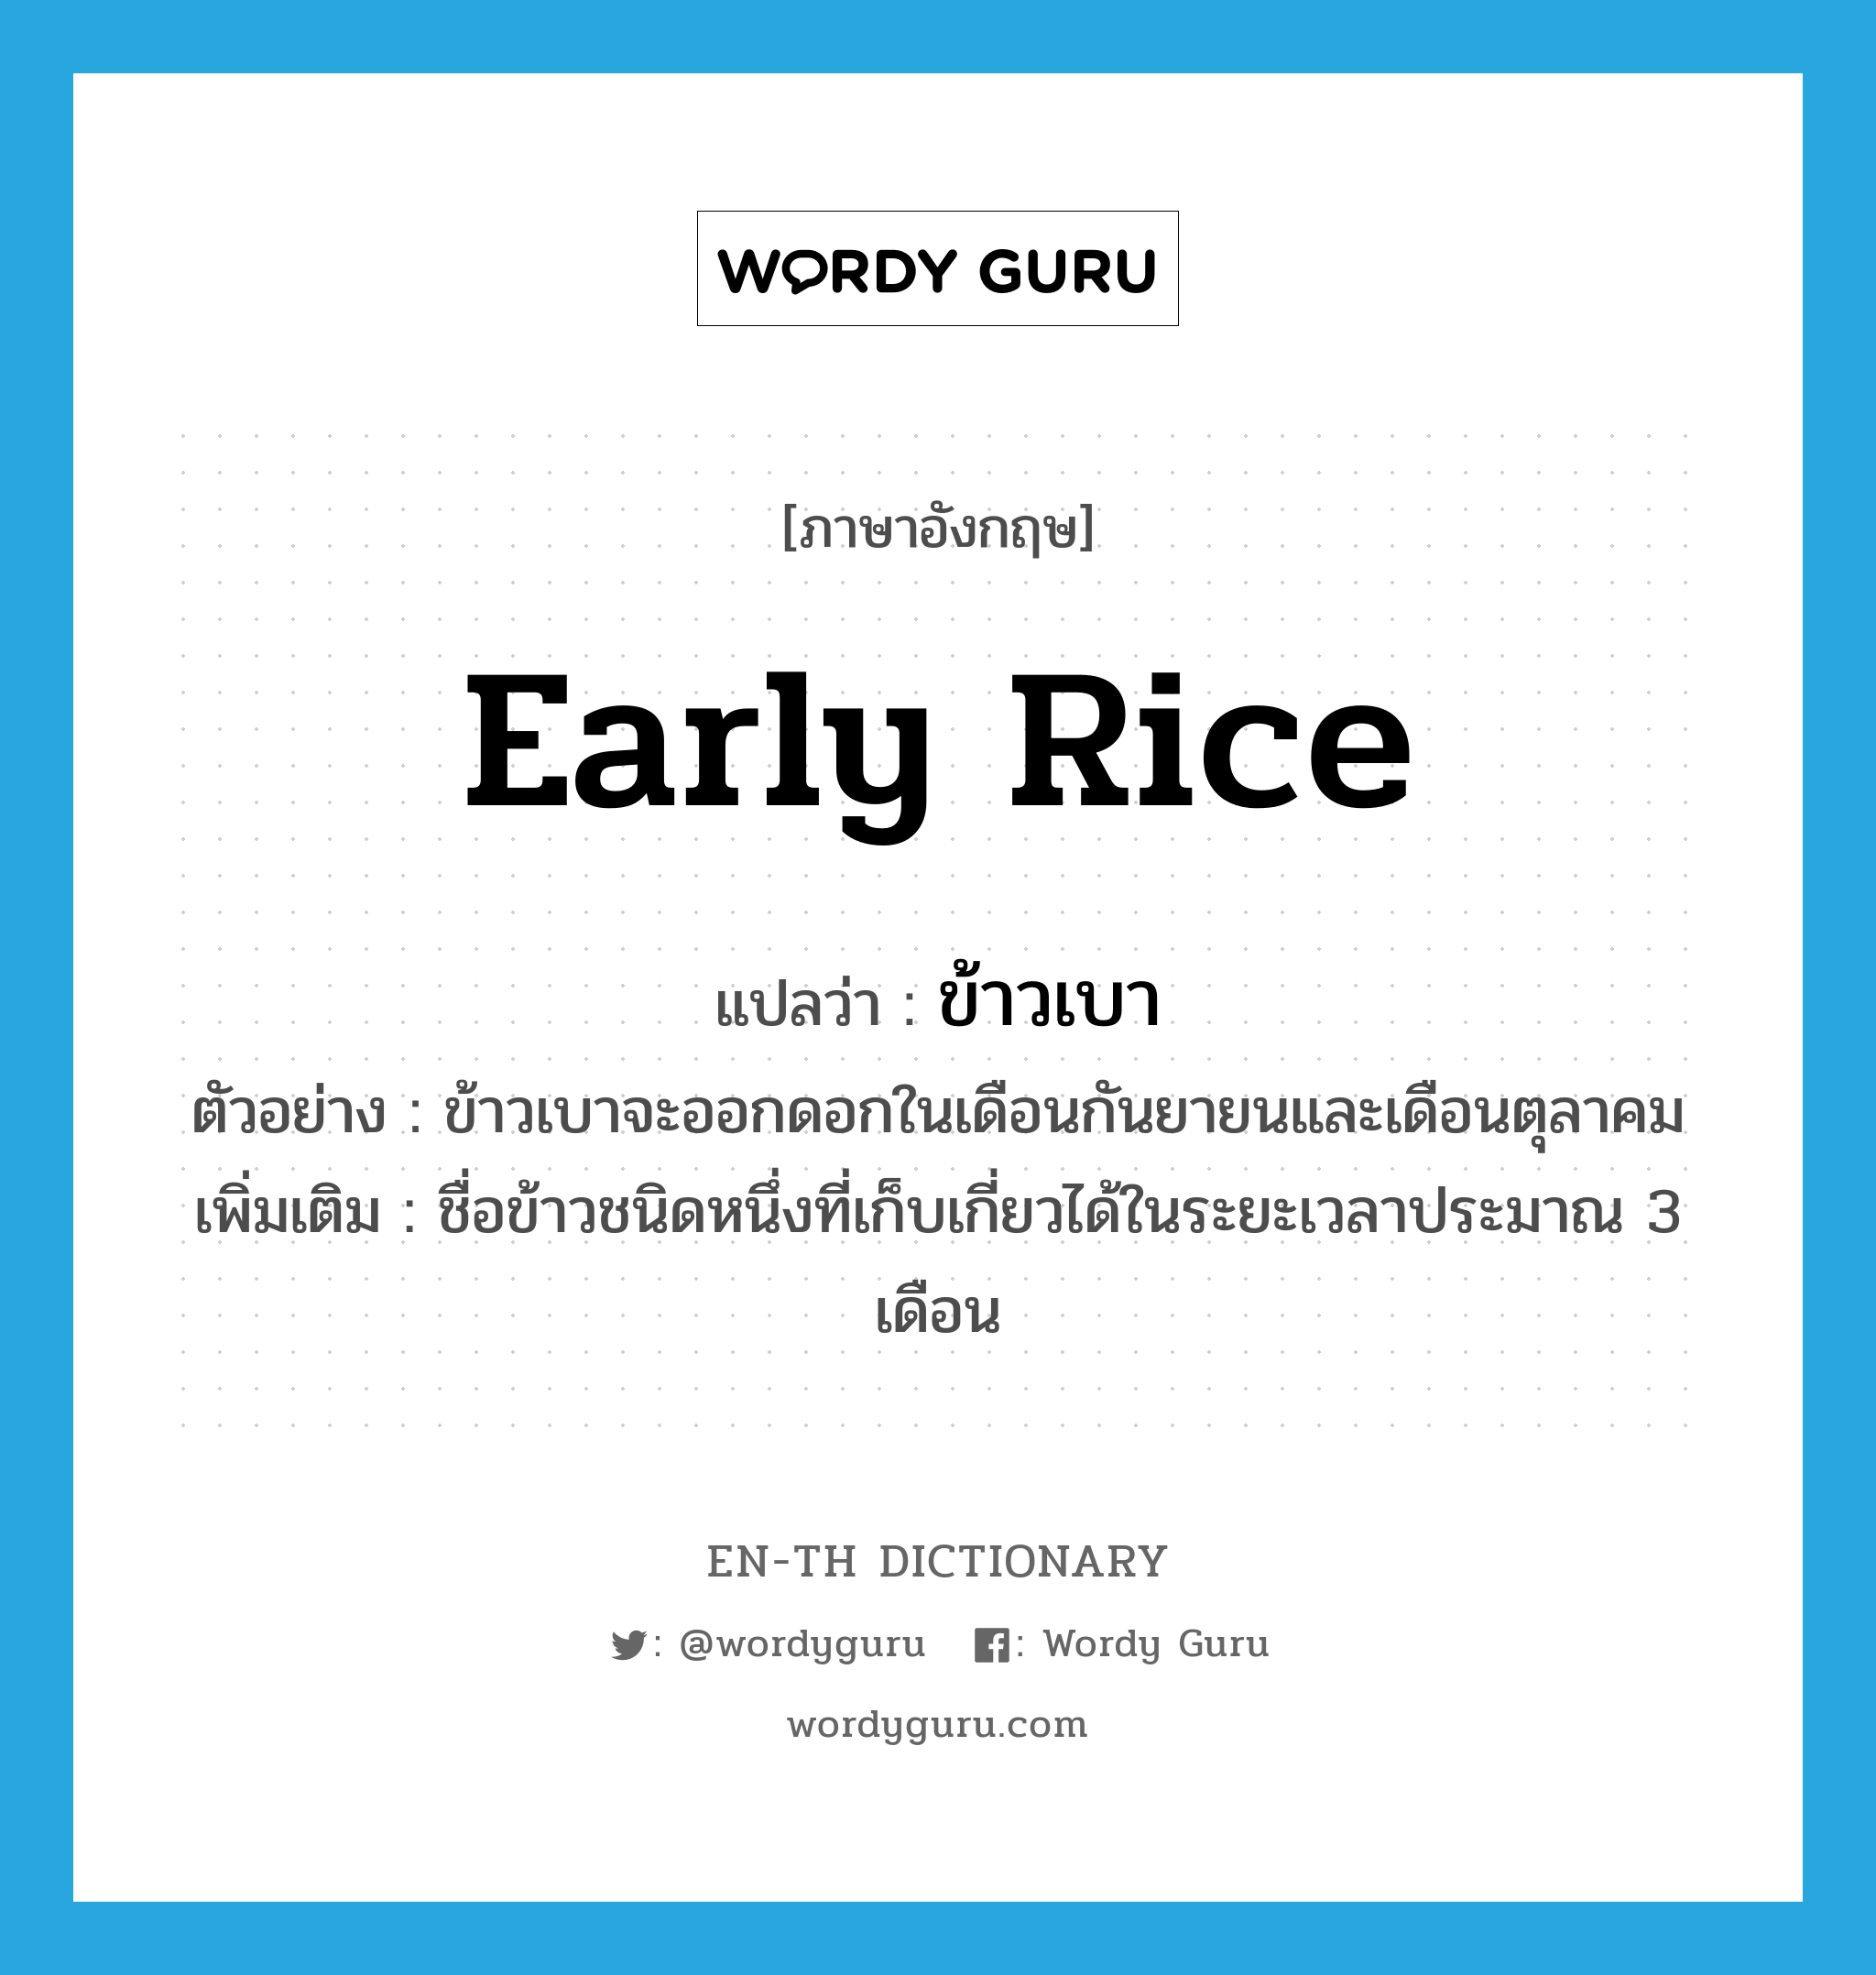 early rice แปลว่า?, คำศัพท์ภาษาอังกฤษ early rice แปลว่า ข้าวเบา ประเภท N ตัวอย่าง ข้าวเบาจะออกดอกในเดือนกันยายนและเดือนตุลาคม เพิ่มเติม ชื่อข้าวชนิดหนึ่งที่เก็บเกี่ยวได้ในระยะเวลาประมาณ 3 เดือน หมวด N